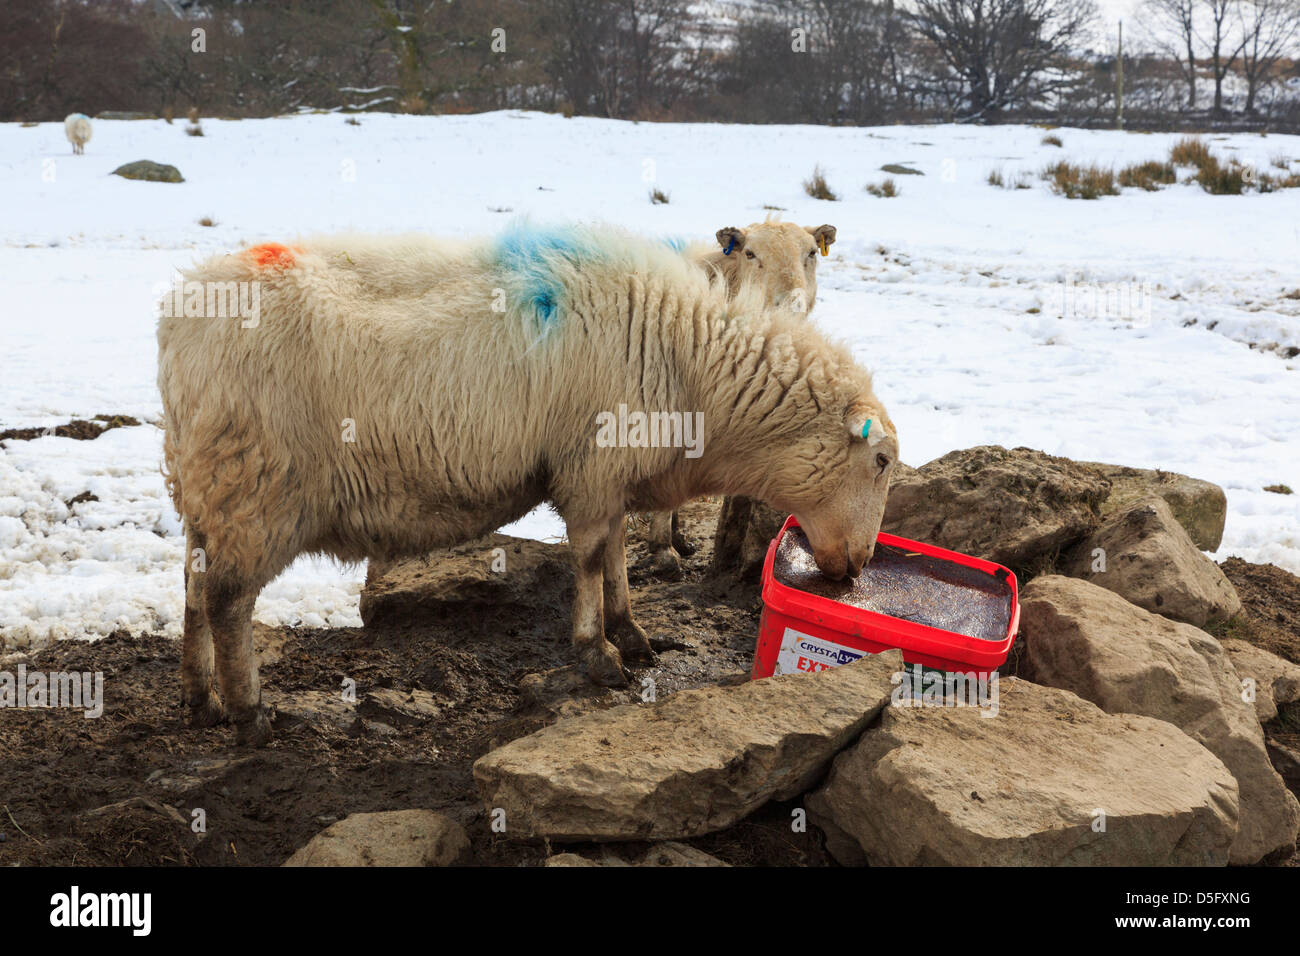 Walisischen Schafe in Stafford ein Mineral Salt Lick Block mit Schnee auf dem Boden im späten Winter auf der Alm. Capel Curig, North Wales, UK, Großbritannien Stockfoto